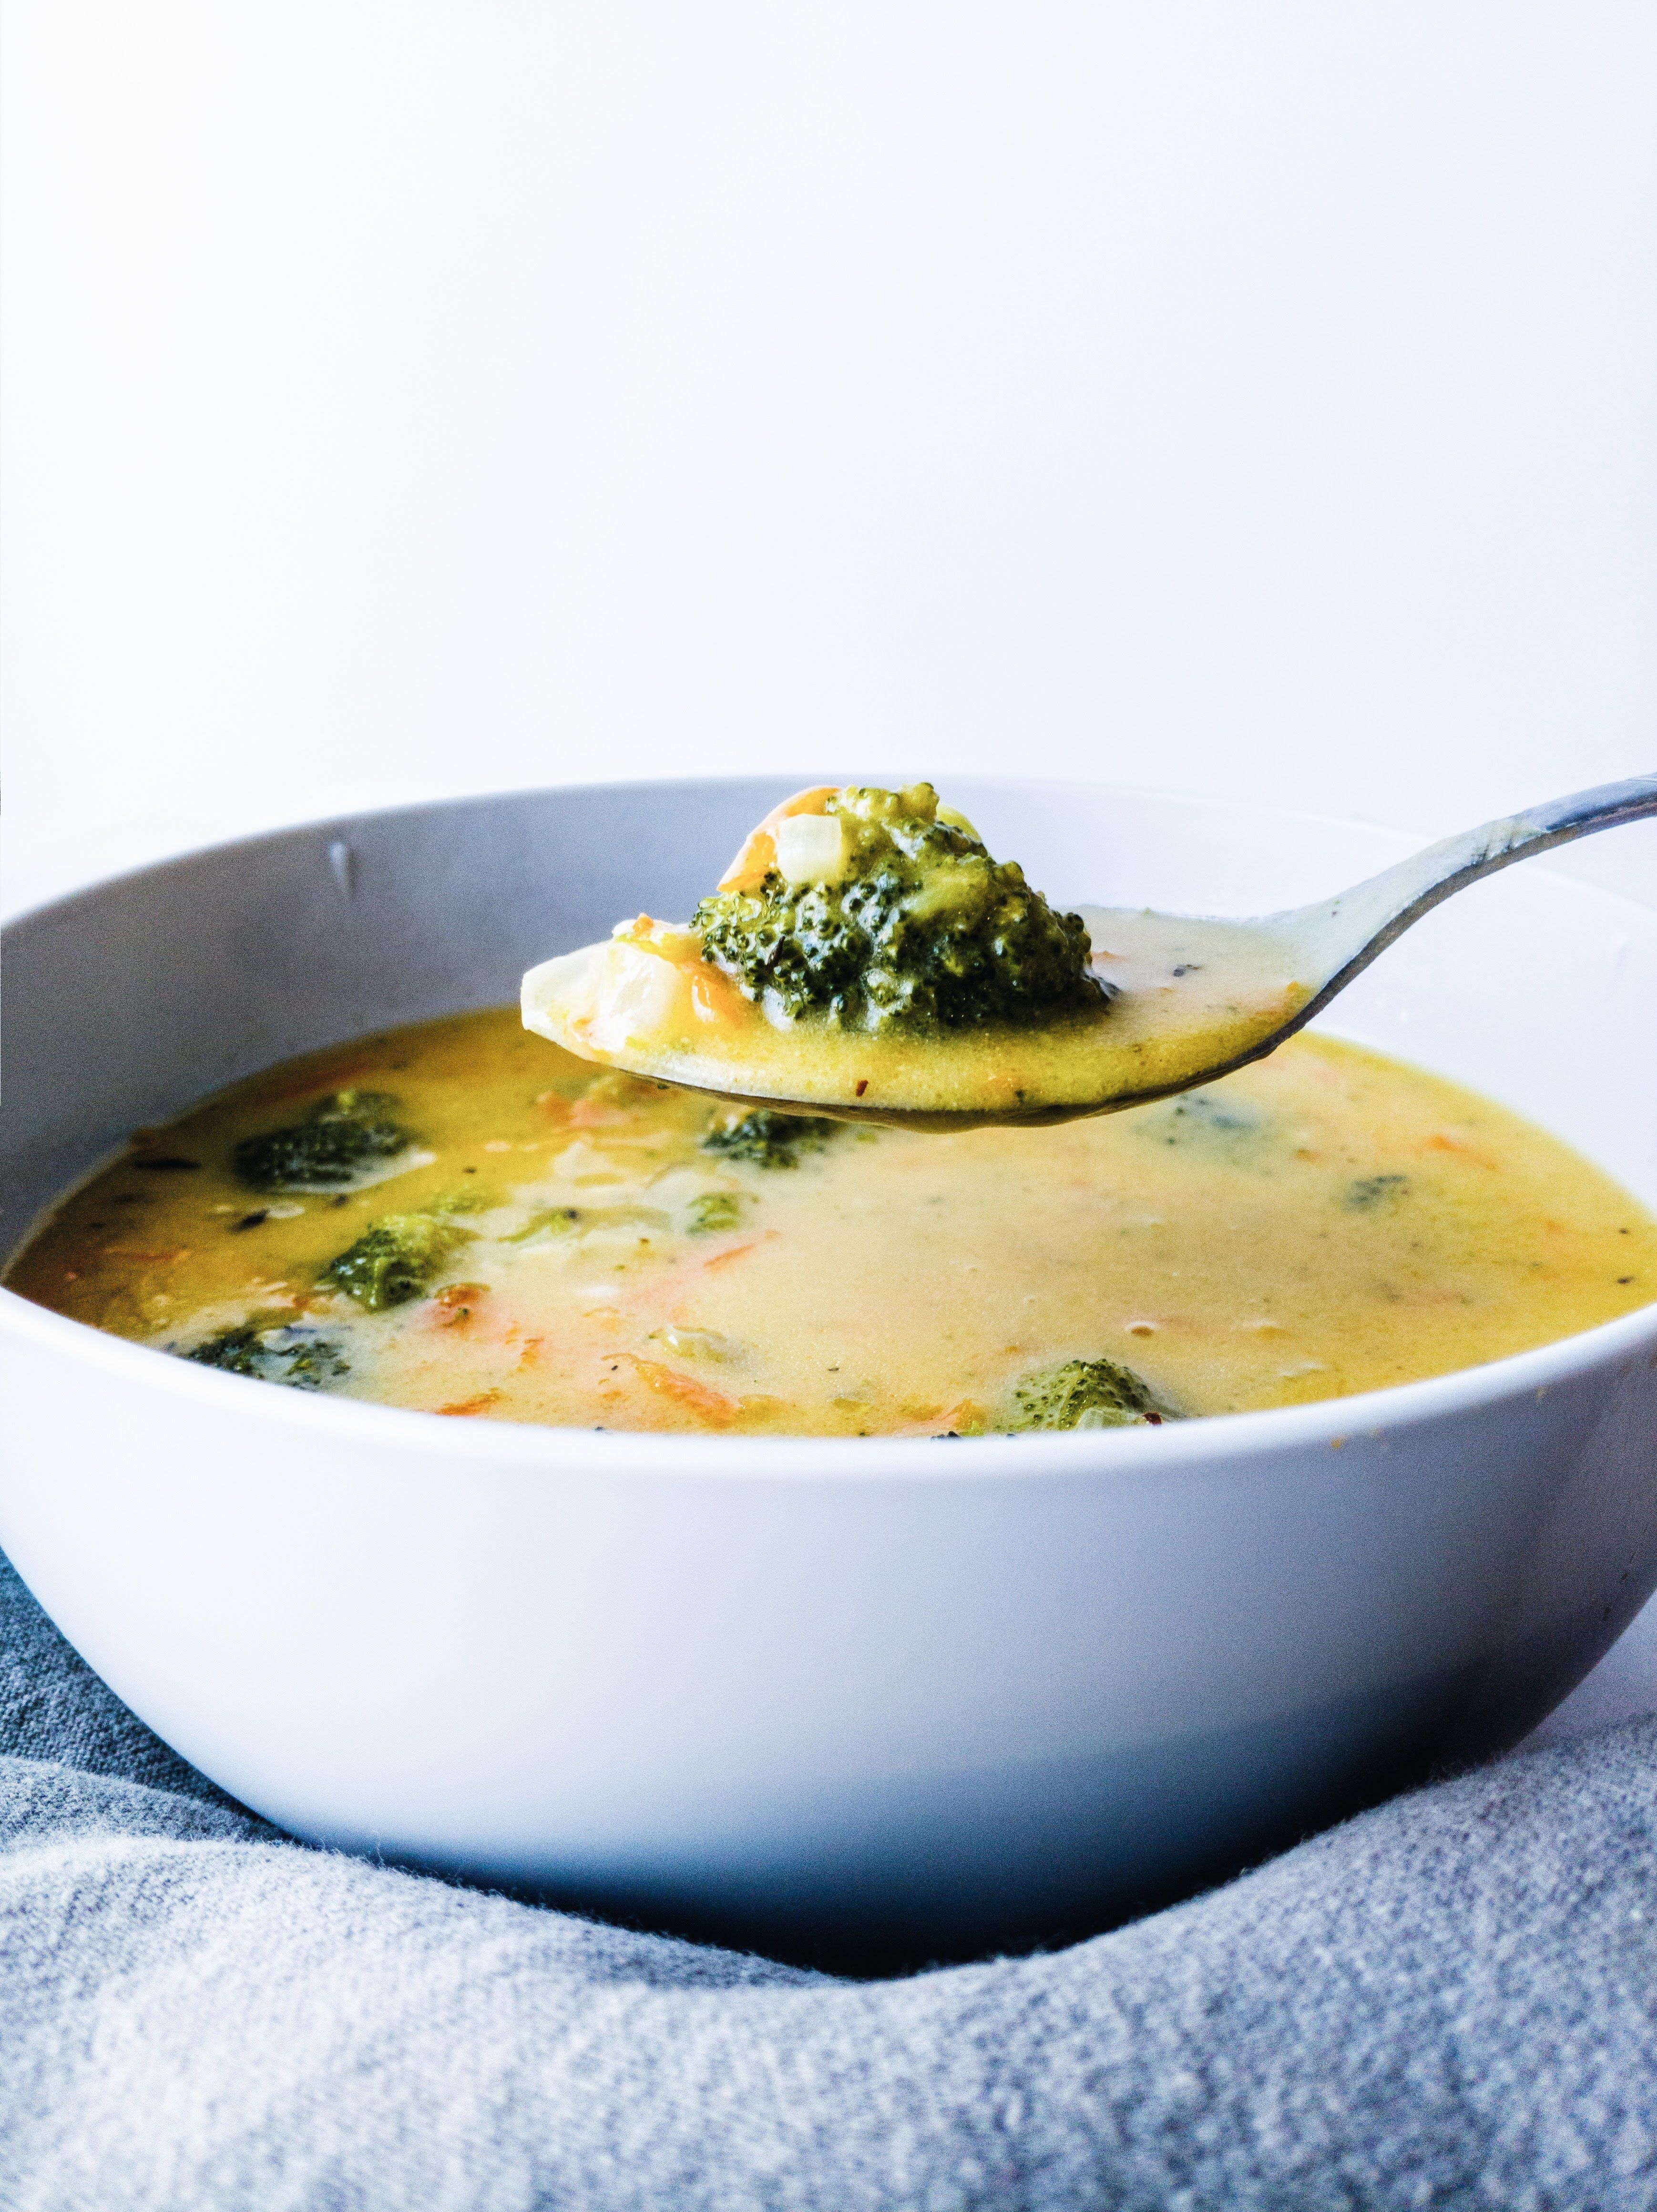 Coconut Broccoli Cheddar Soup by cradlekitchen | Quick & Easy Recipe ...